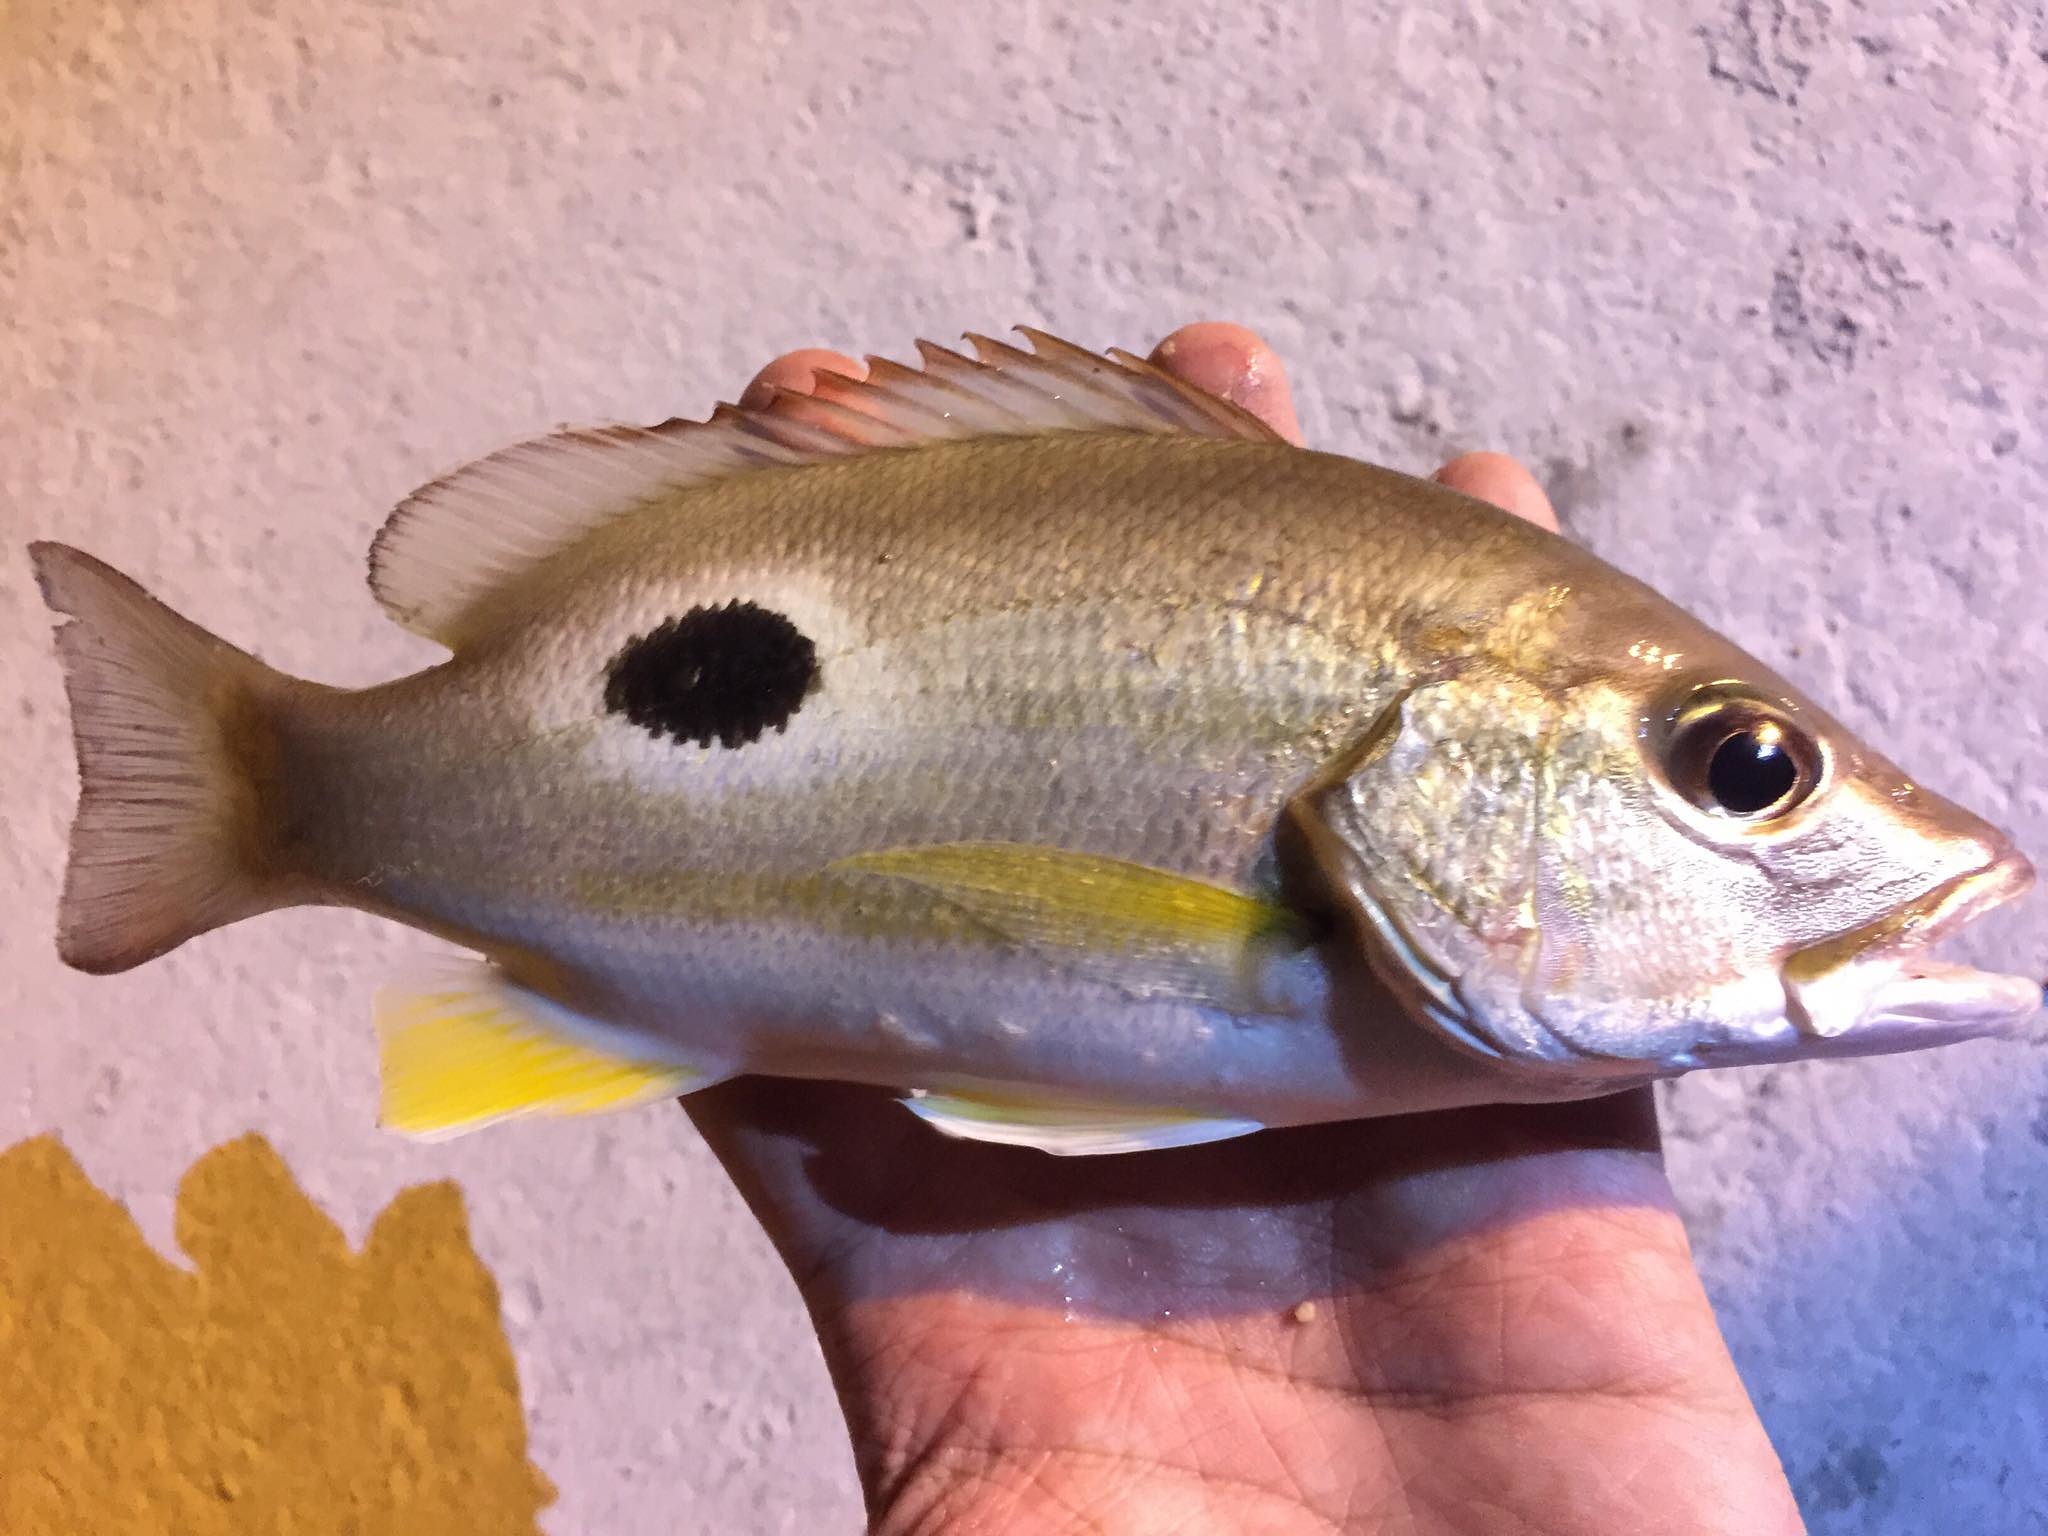 ตกปลา บางแสน เขาสามมุข ชลบุรี 2019 ครับ